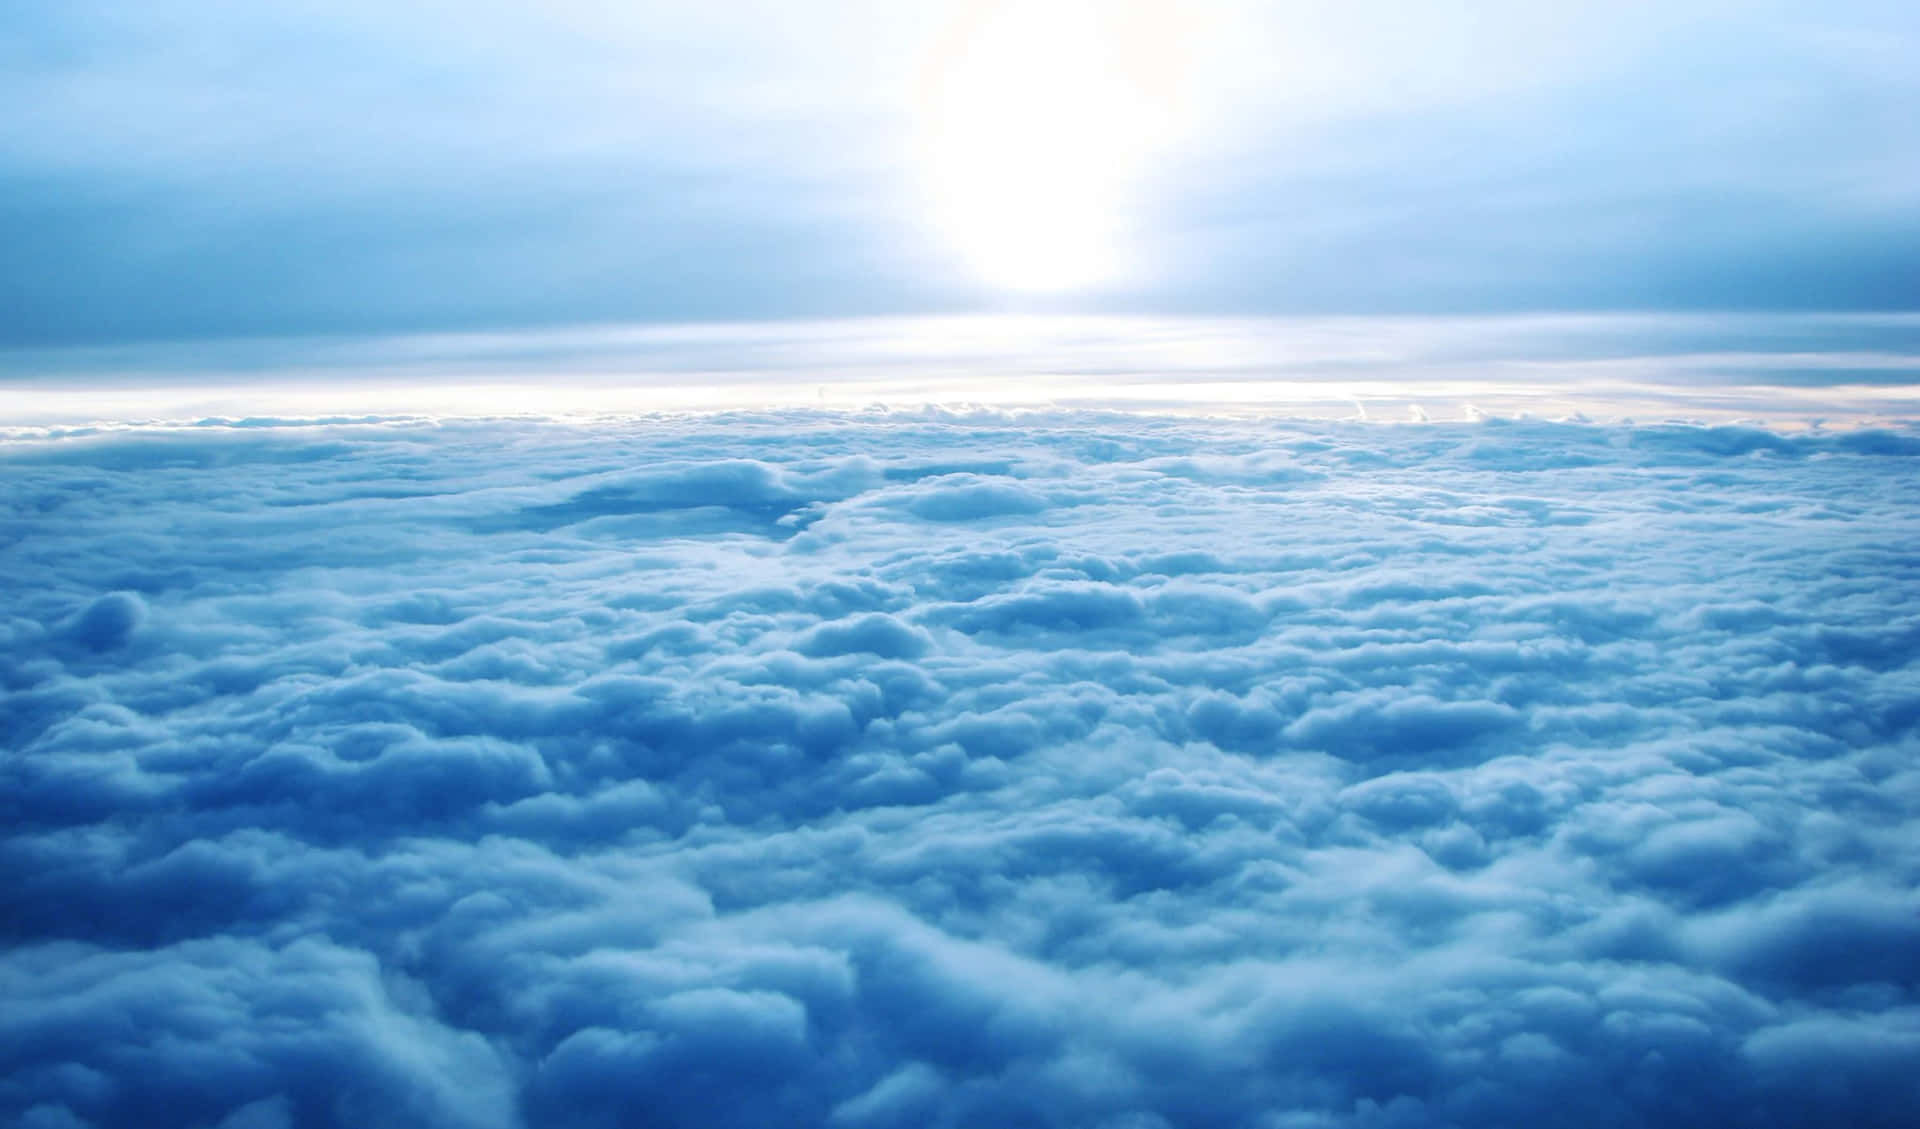 Imagende Un Cielo Azul Con Nubes Tranquilas.